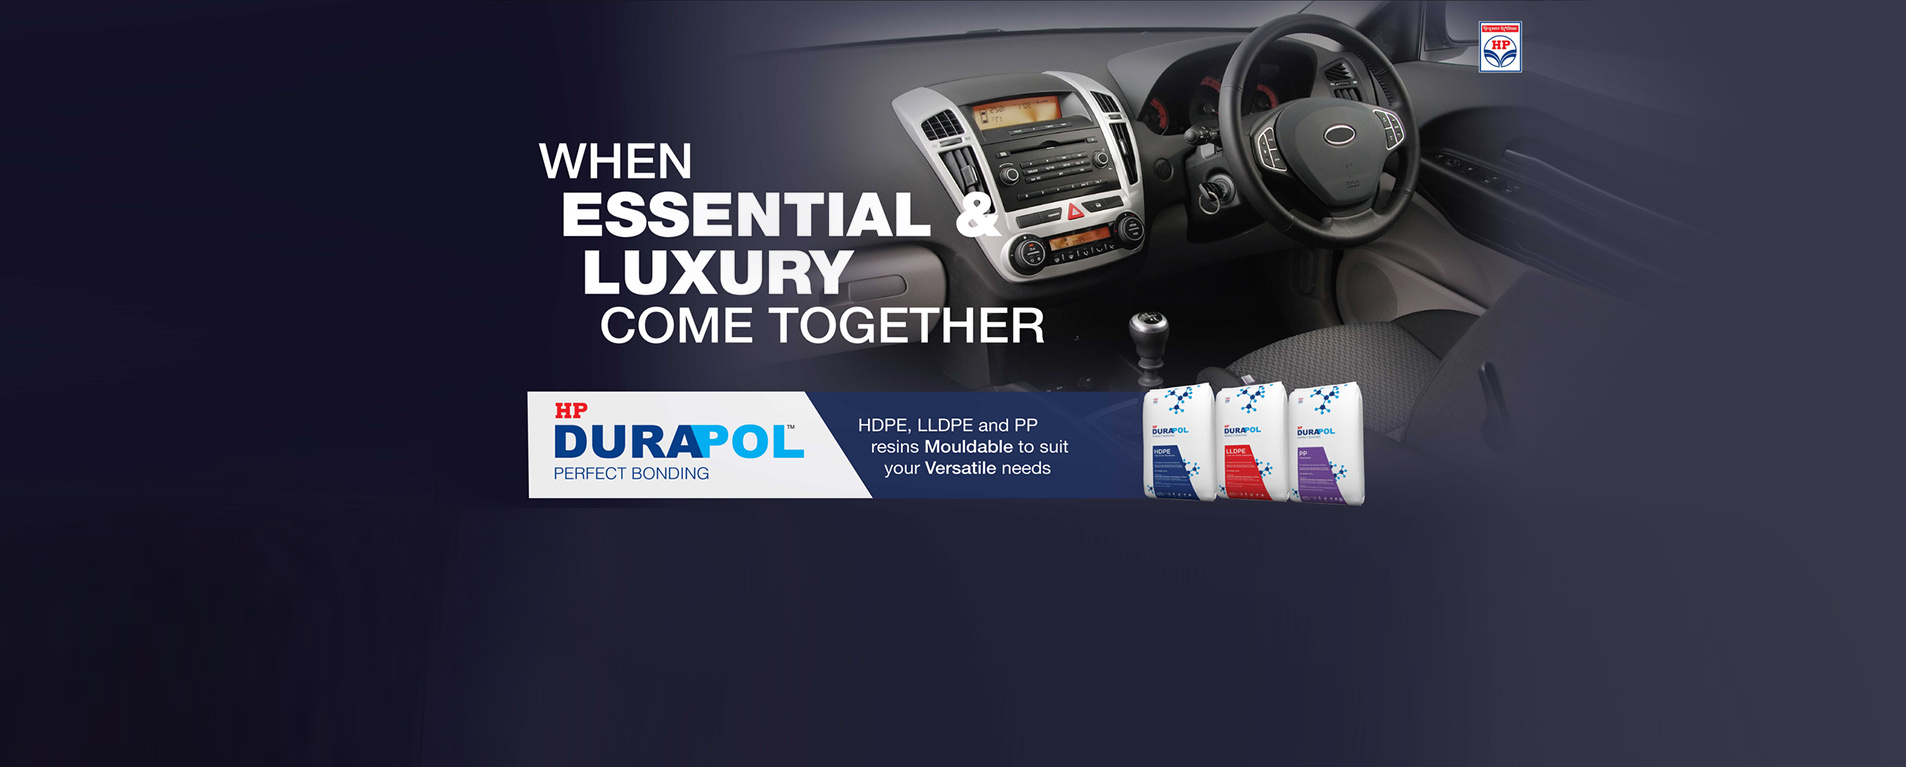 Durapol Brand Campaign - 11